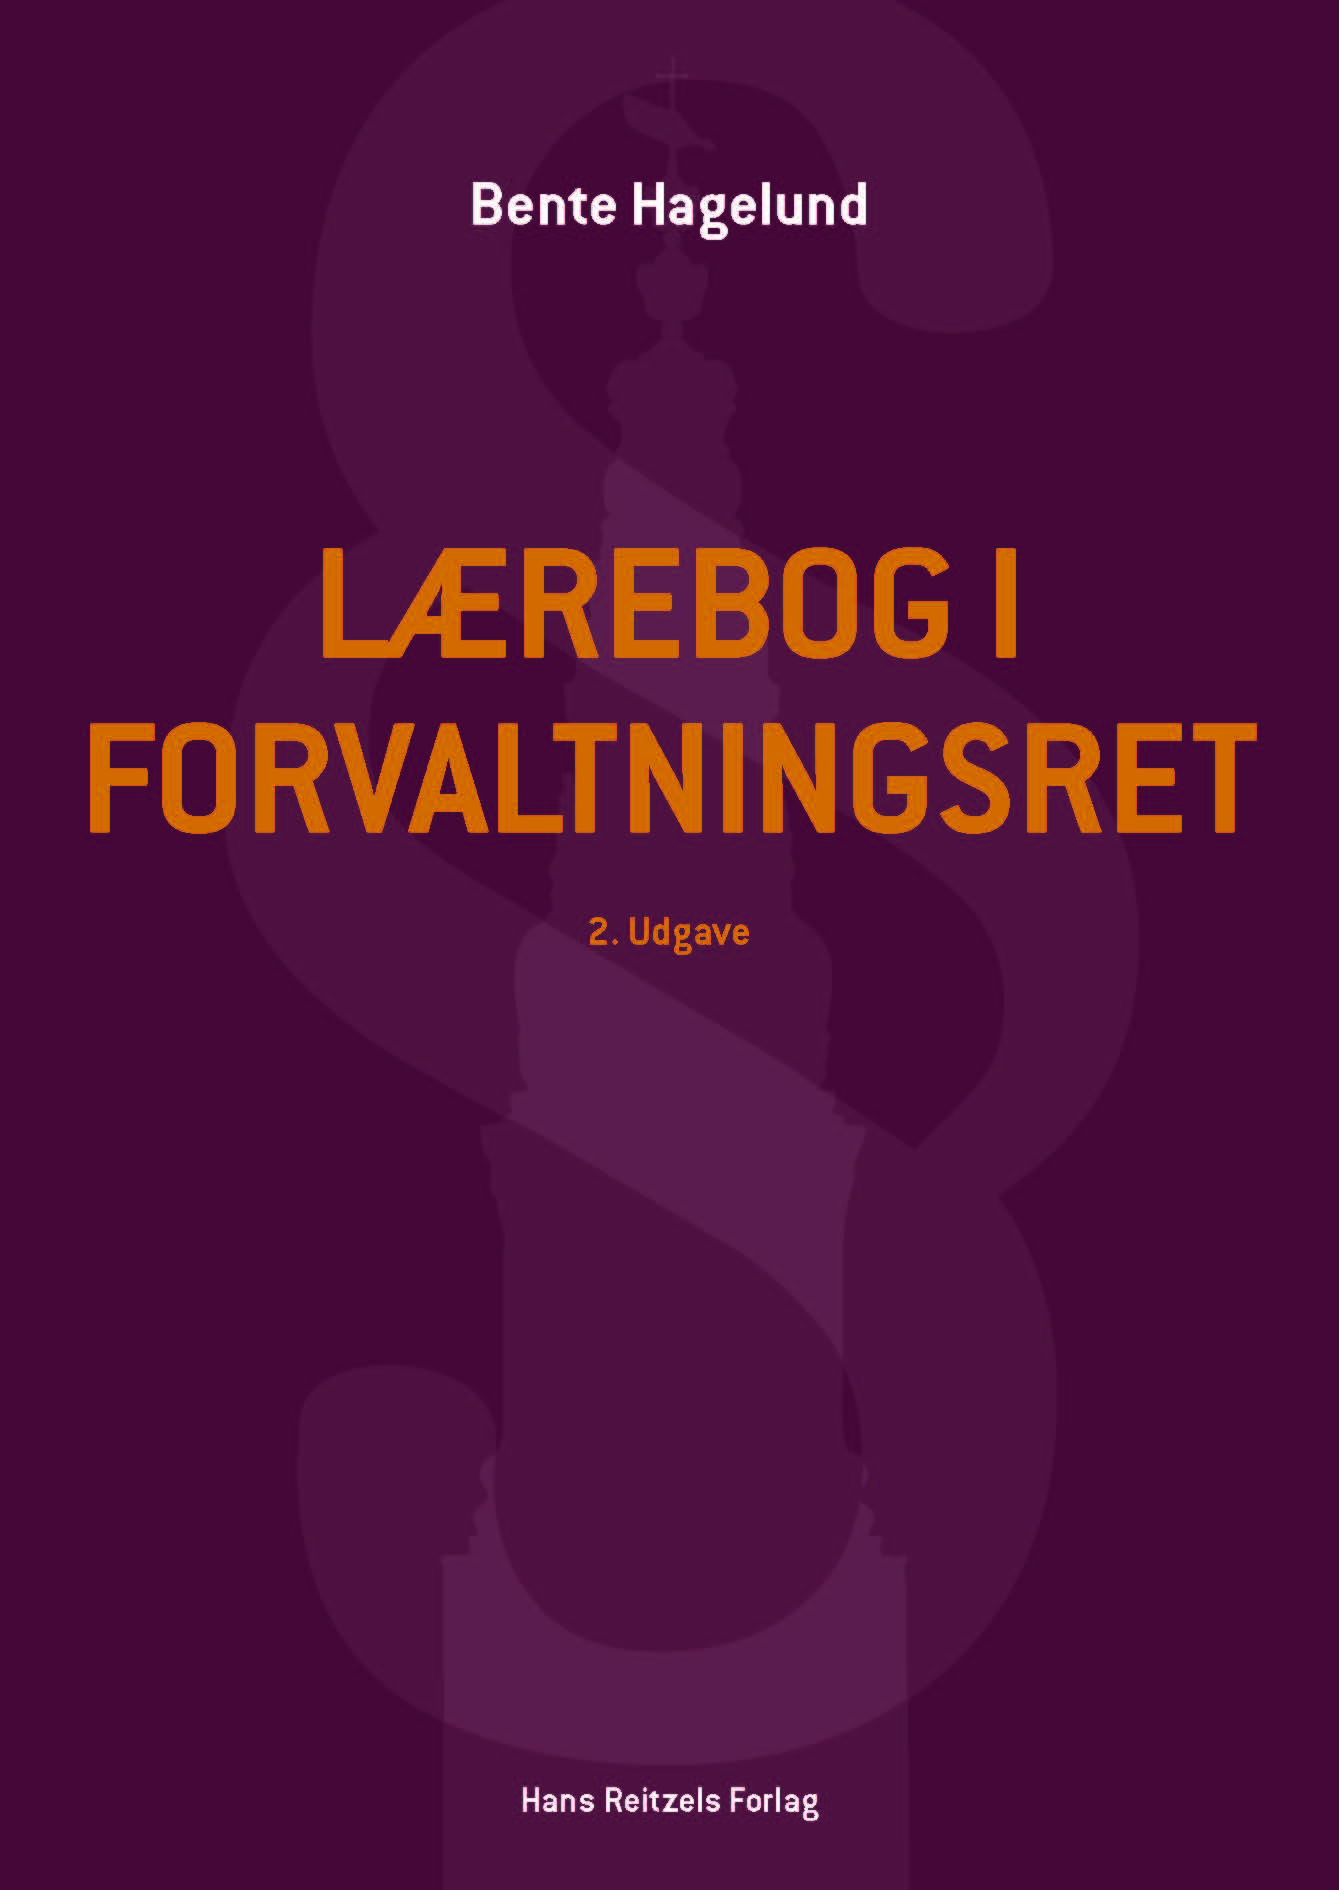 Bente Hagelund: Lærebog i forvaltningsret, Hans Reitzels forlag.